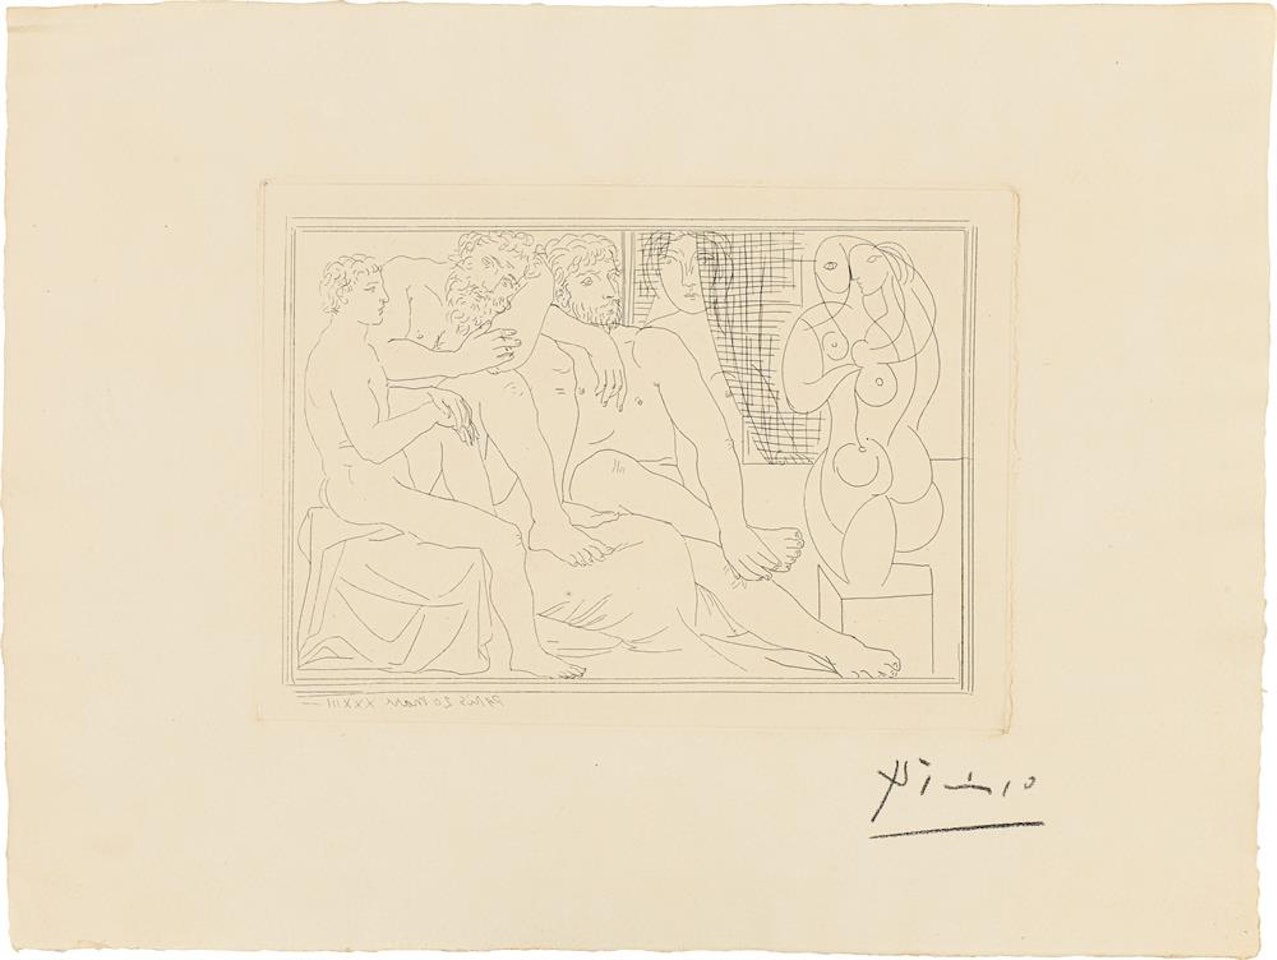 Sculpteurs, Modèles et Sculpture, from "La Suite Vollard" by Pablo Picasso